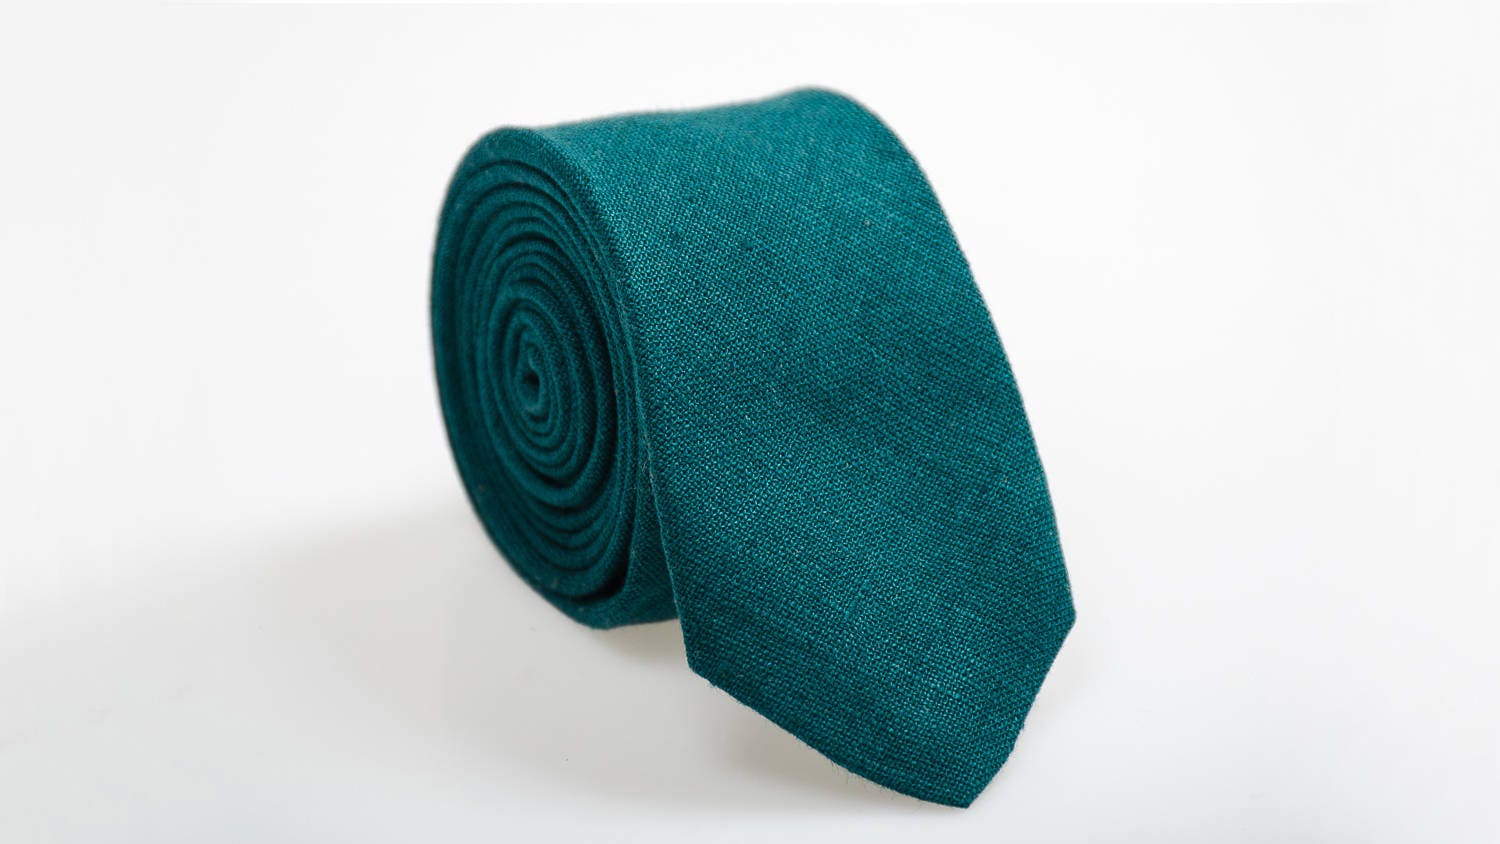 Dark Teal tie teal green tie necktie for men teal wedding